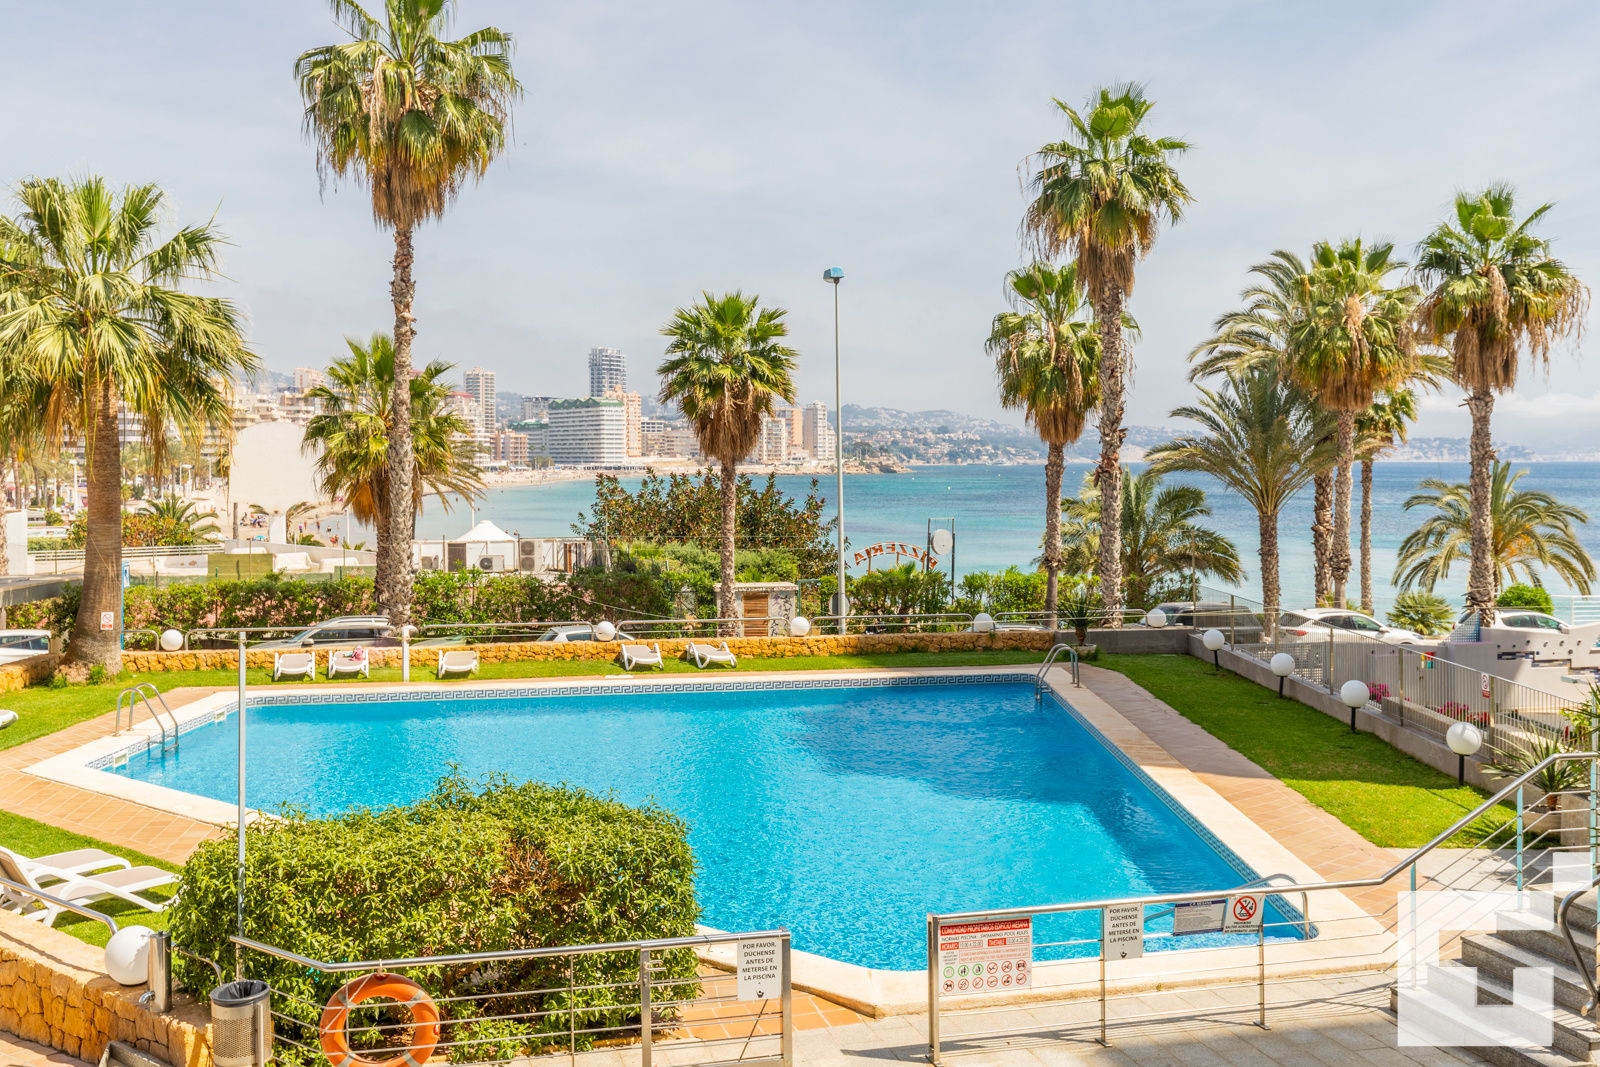 Apartamento mesana 13, Appartement  met gemeenschappelijk zwembad in Calpe, Costa Blanca, Spanje voor 4 personen...